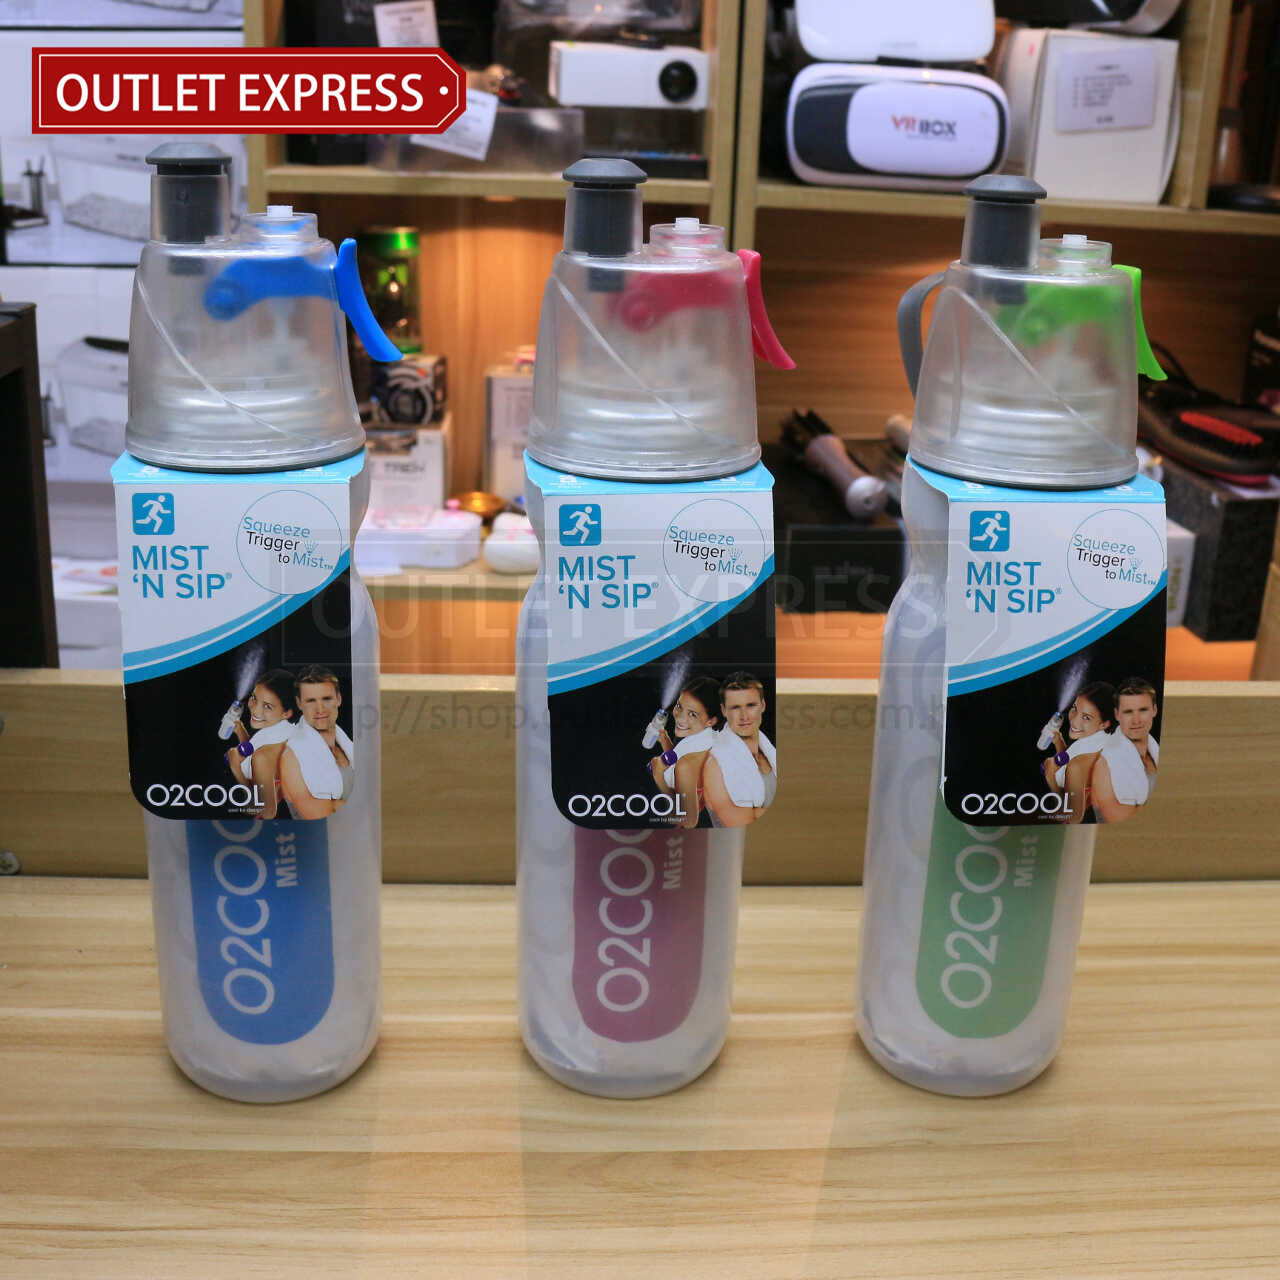 美國 O2COOL 20OZ運動保冷噴霧水樽三色正面圖片 - Outlet Express HK生活百貨城實拍相片